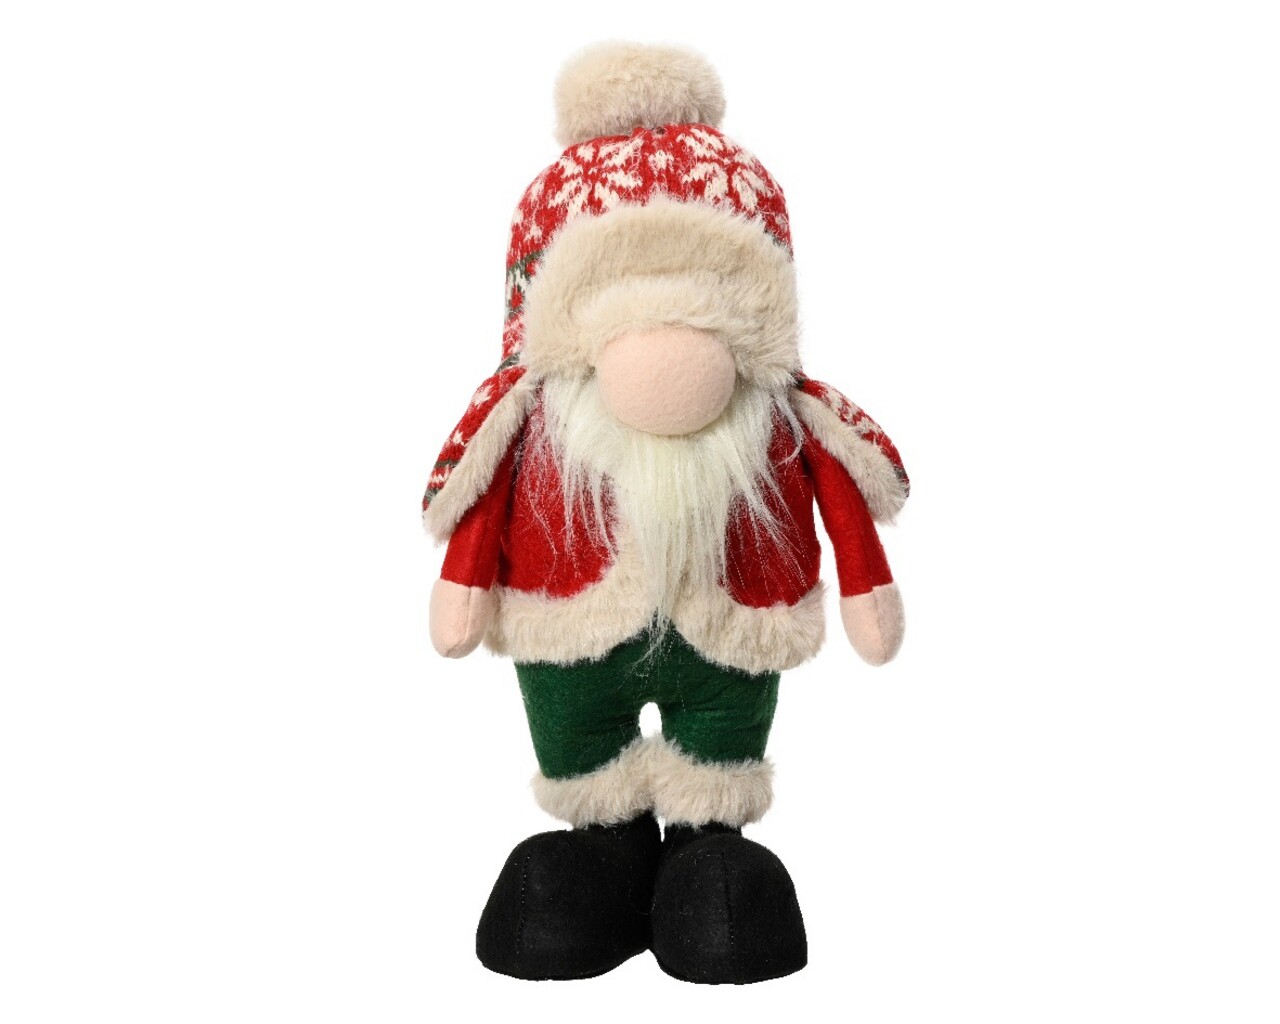 Decoratiune Gnome w hat w snowflake, Decoris, 19x12x40 cm, poliester, multicolor